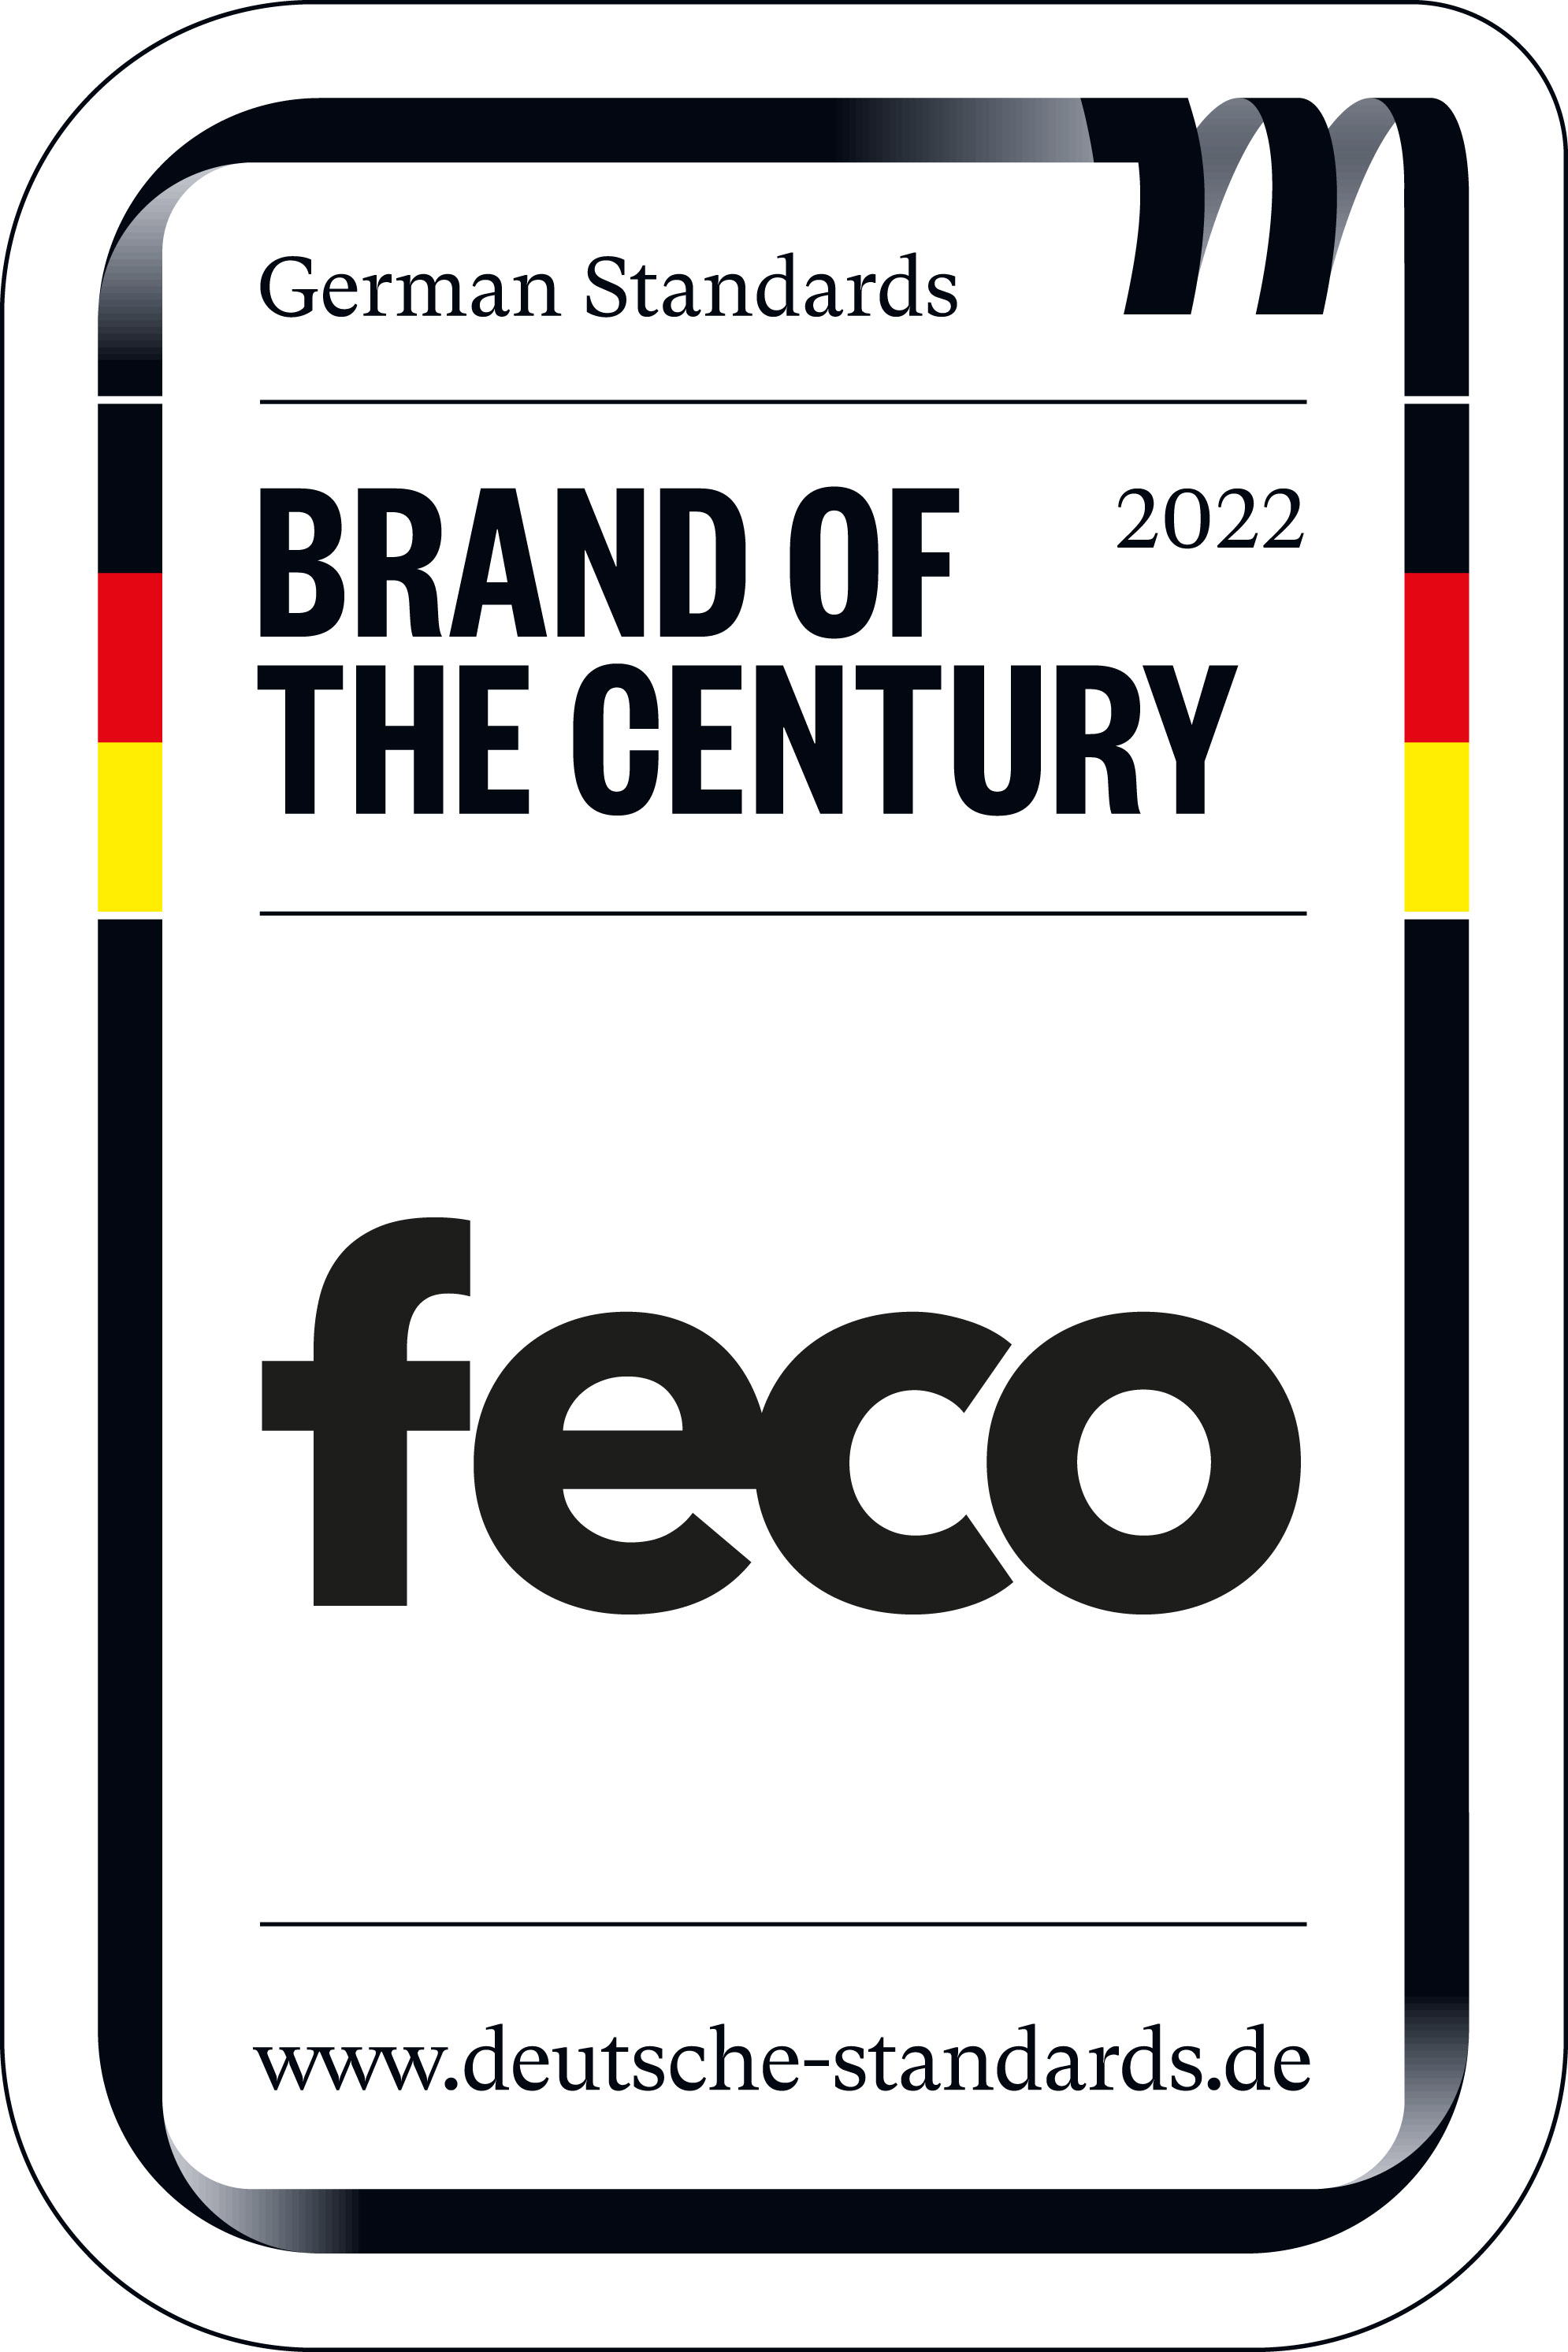 feco ist „Marke des Jahrhunderts“